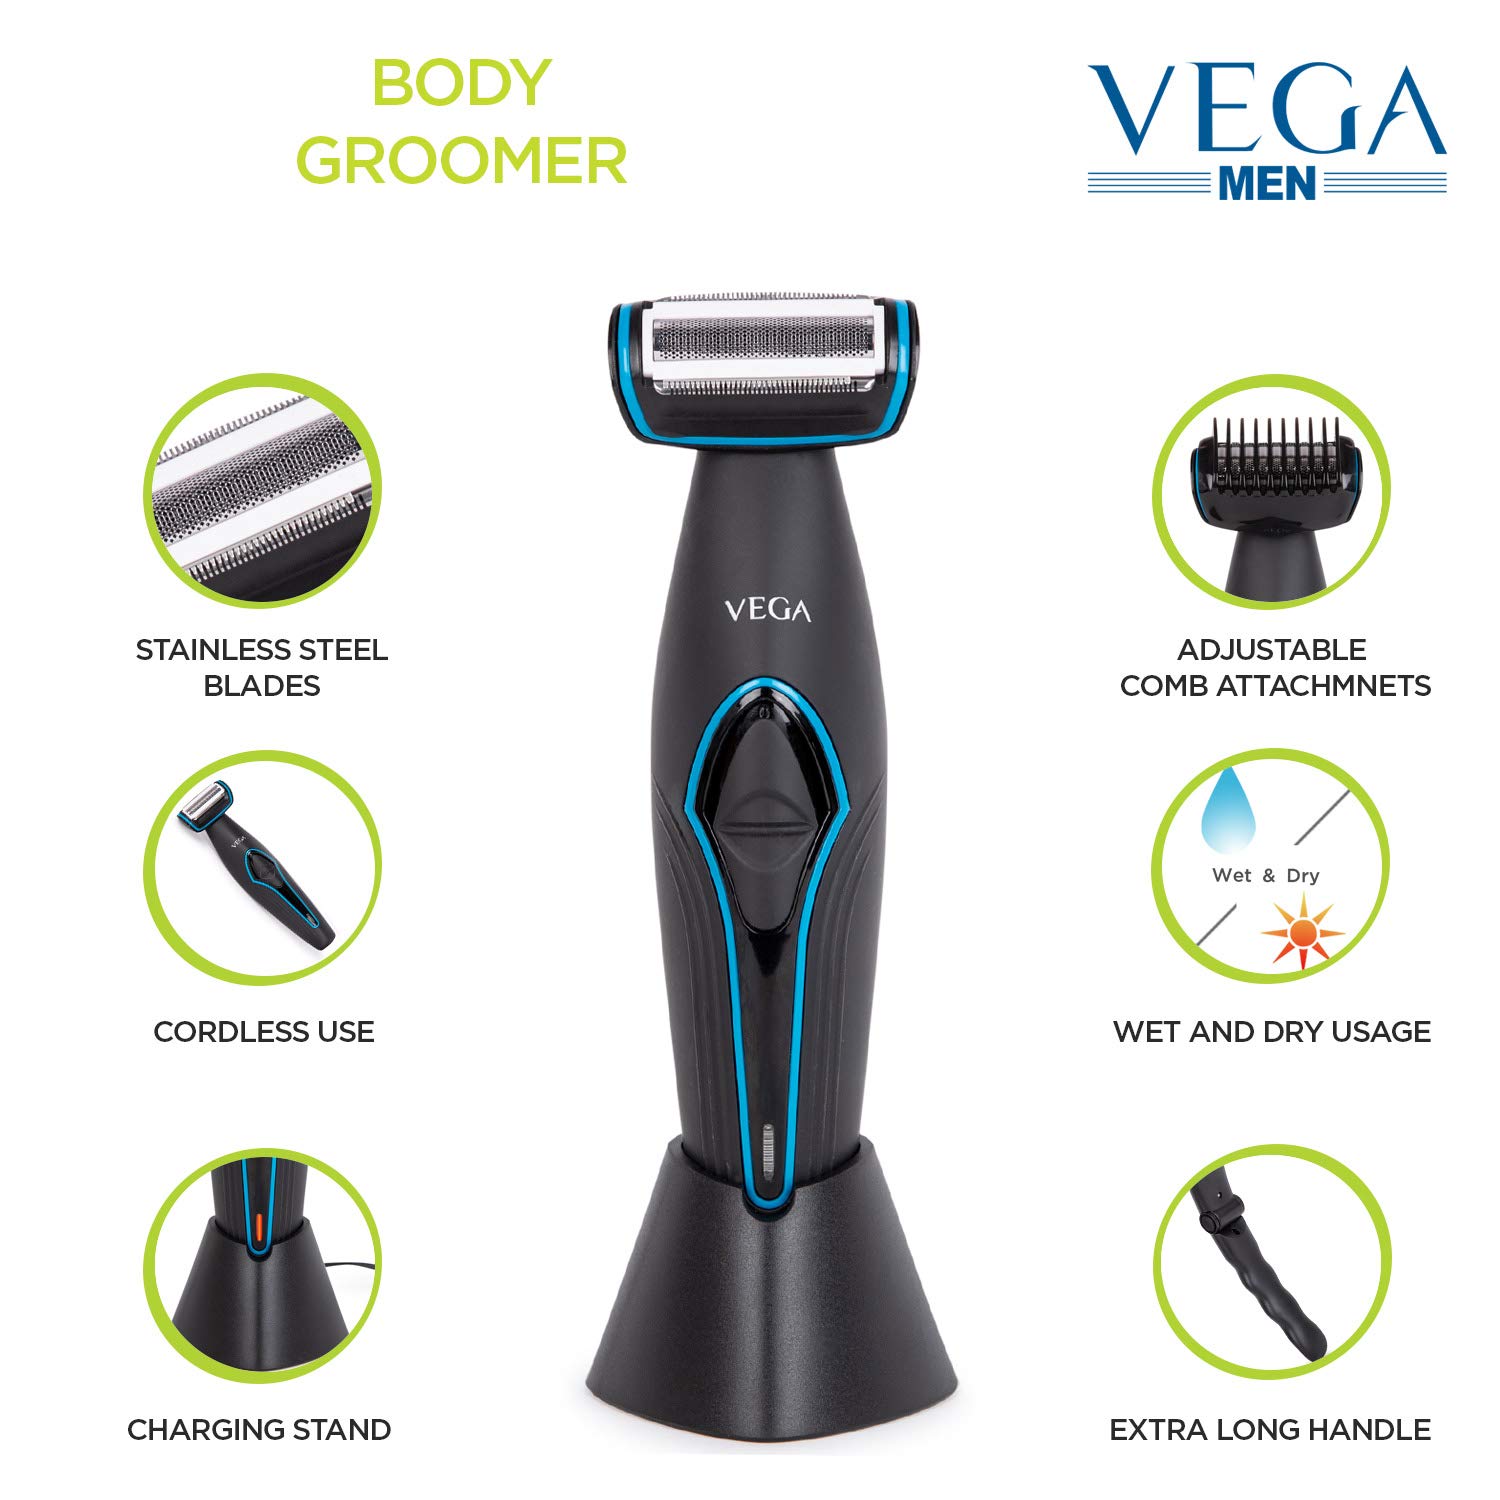 Vega Men VHBG-01 Body Groomer